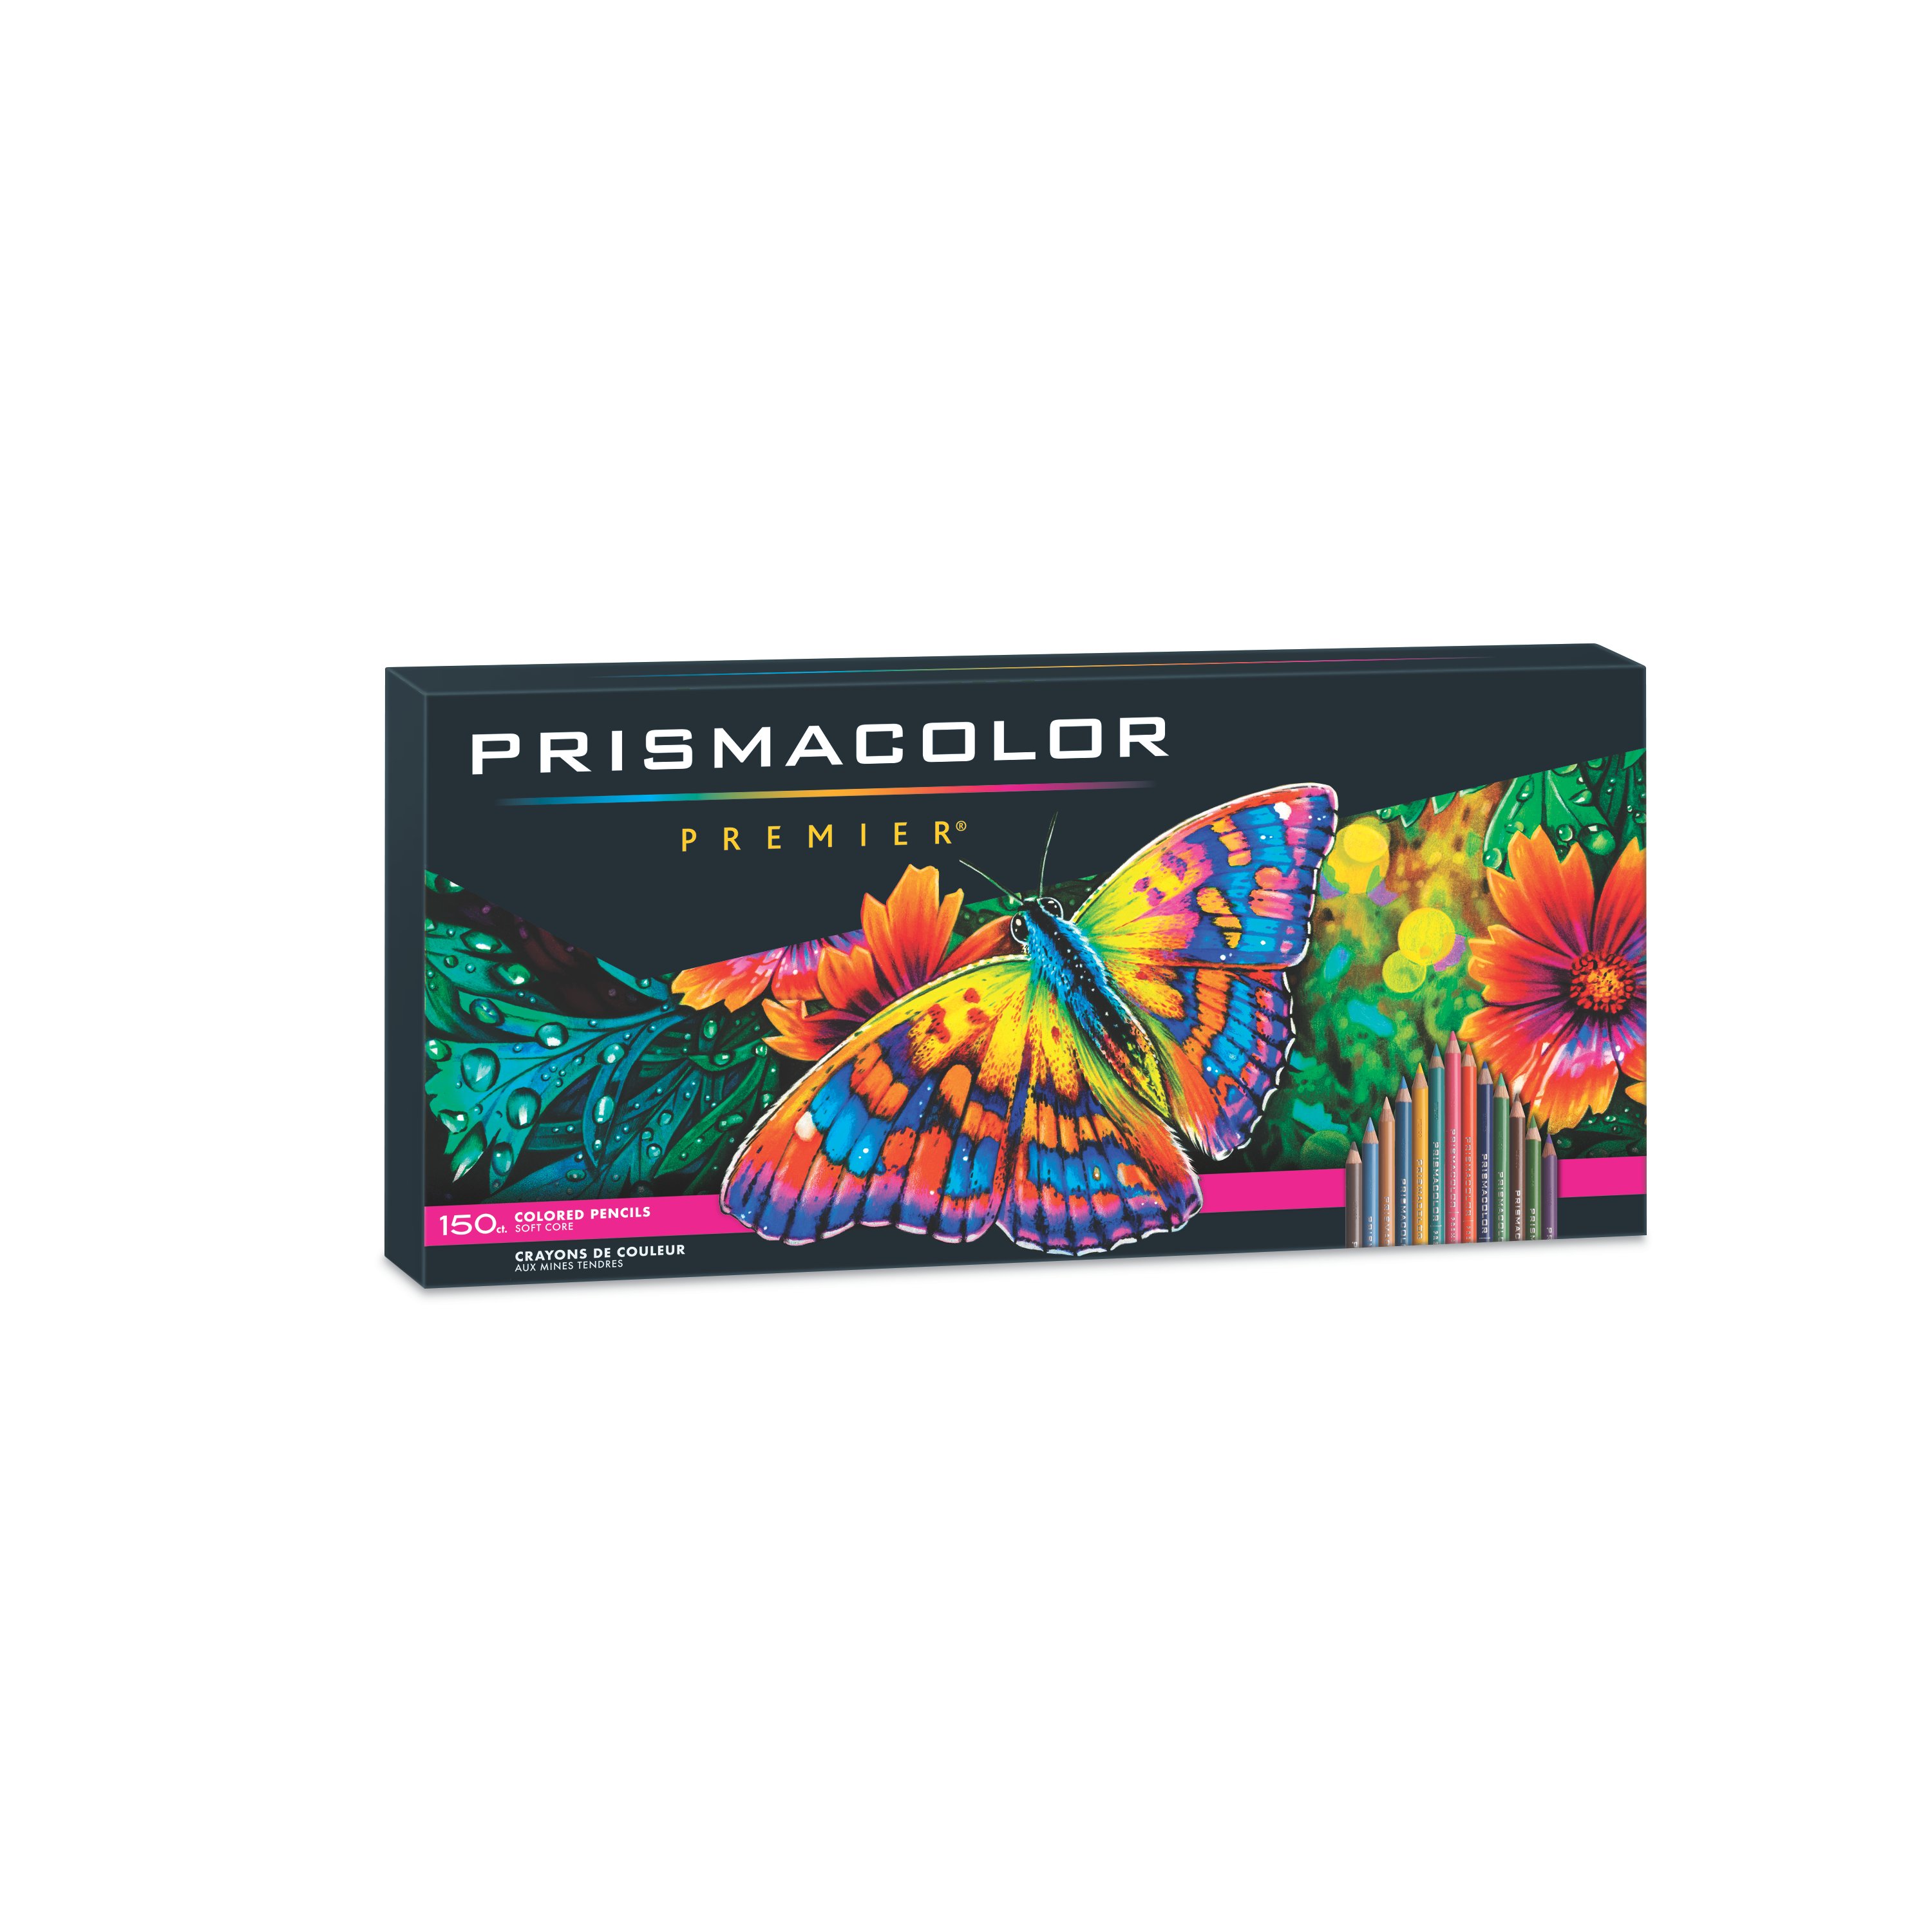 72 Pack Sanford PRISMACOLOR Premier colored pencils soft core PENCIL SHARPENER 